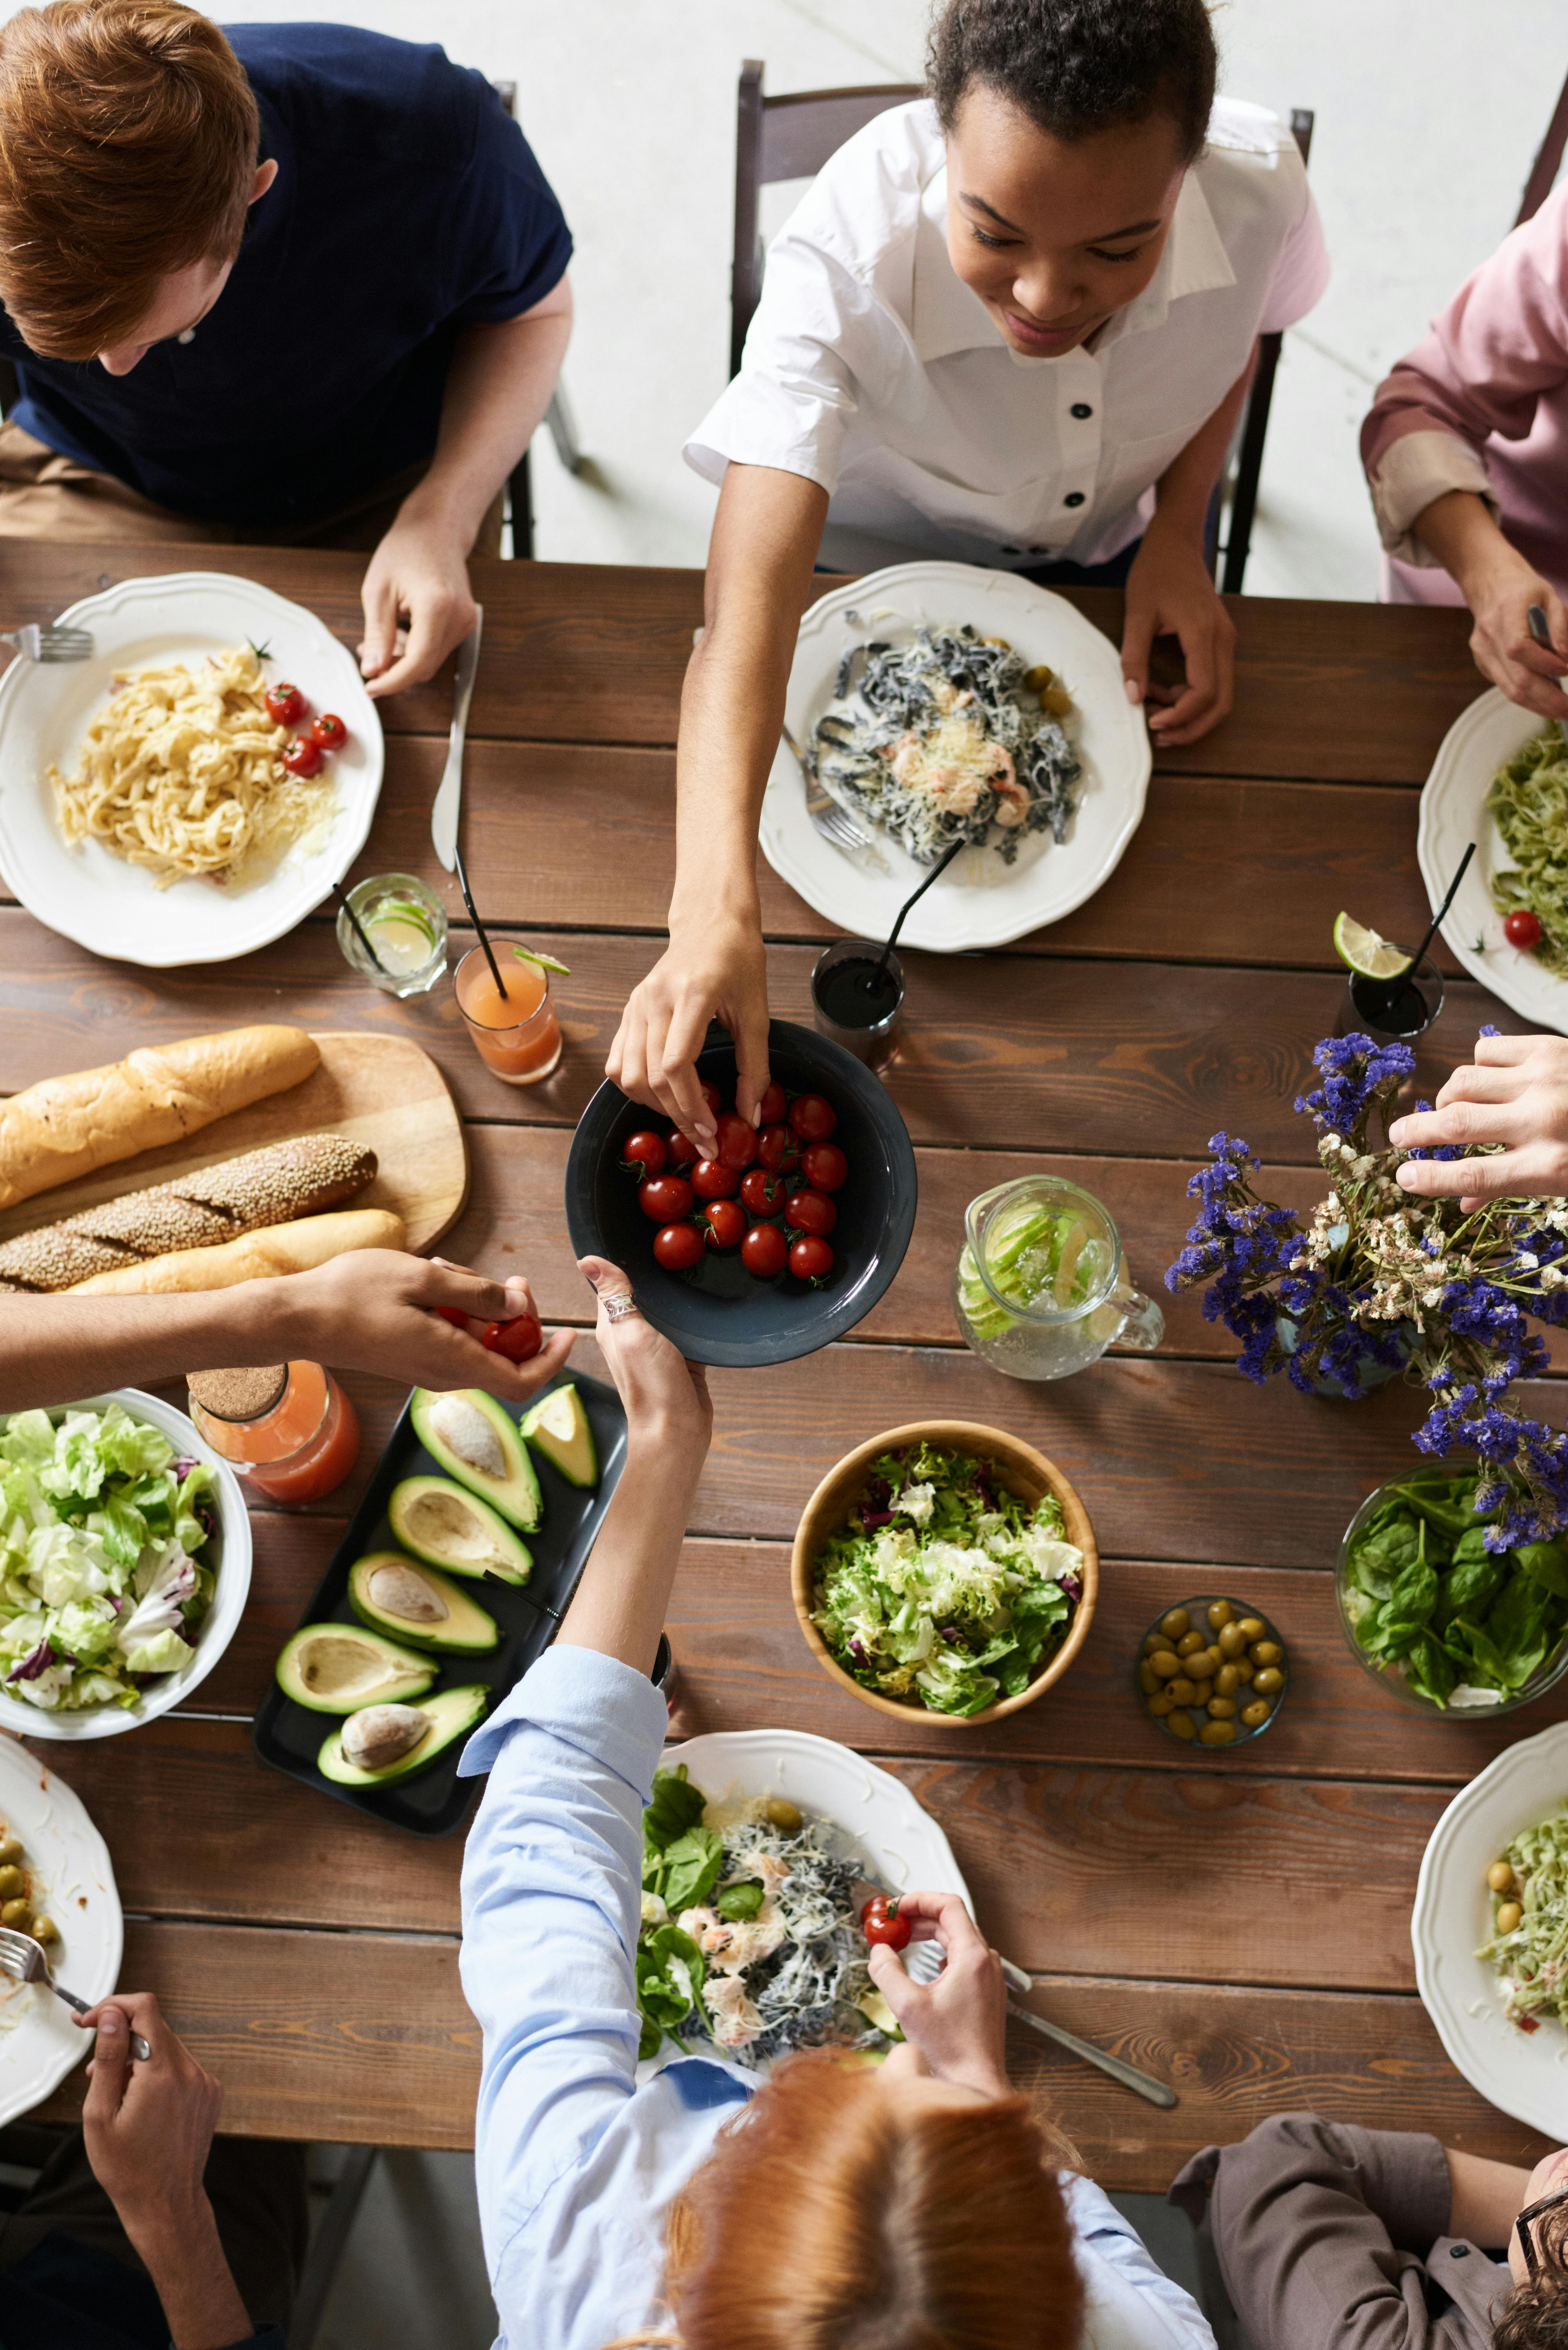 Un groupe d'amis partageant un repas | Source : Pexels